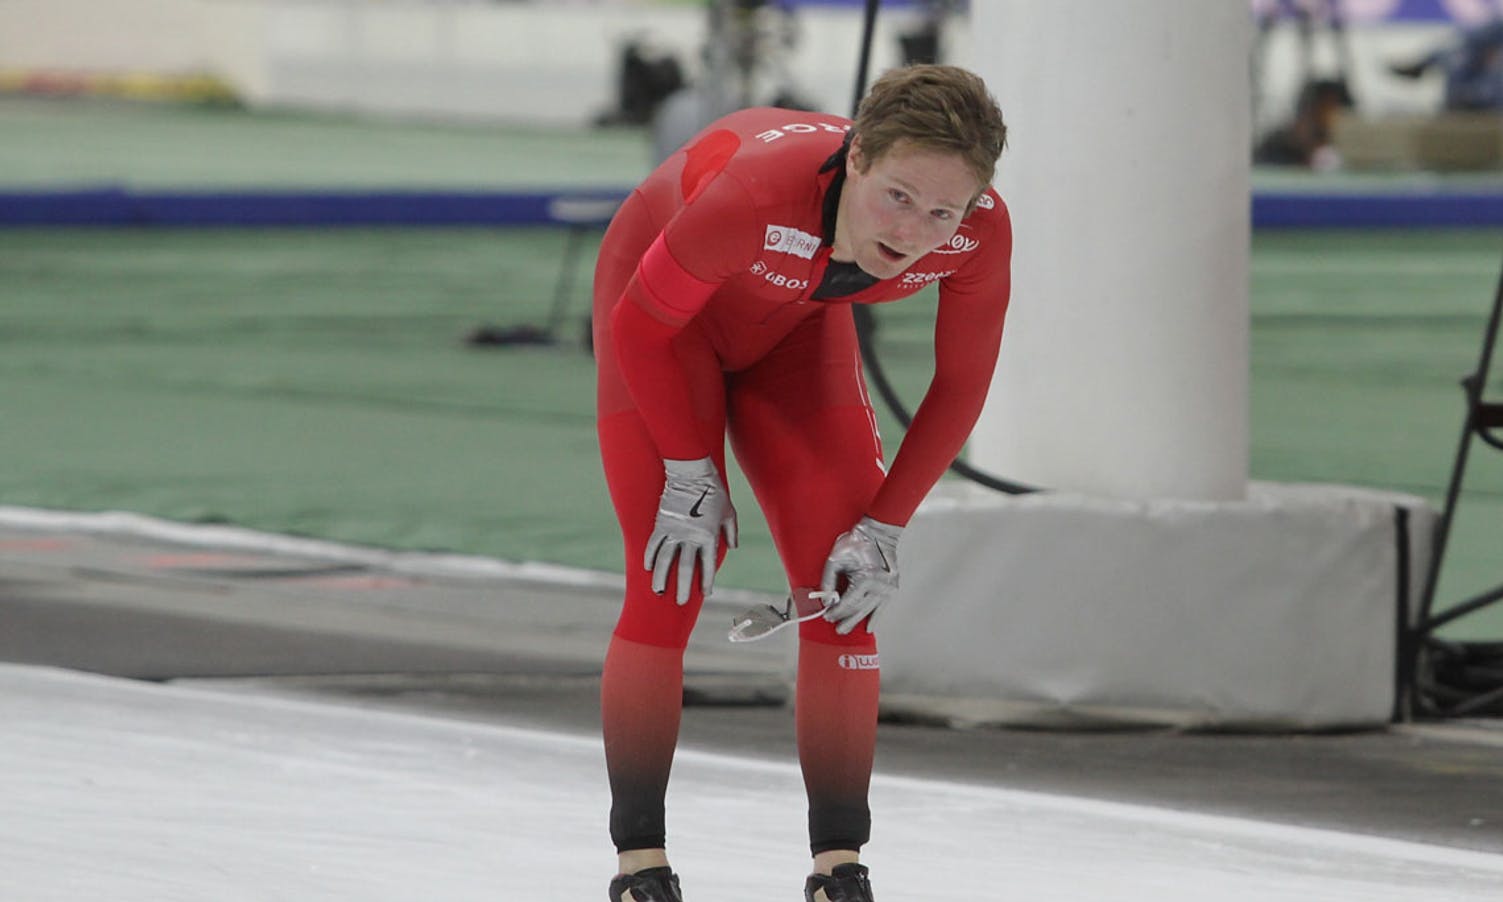 Sverre kom på 5. plass på 1500 meter. (Arkivfoto: KVB)